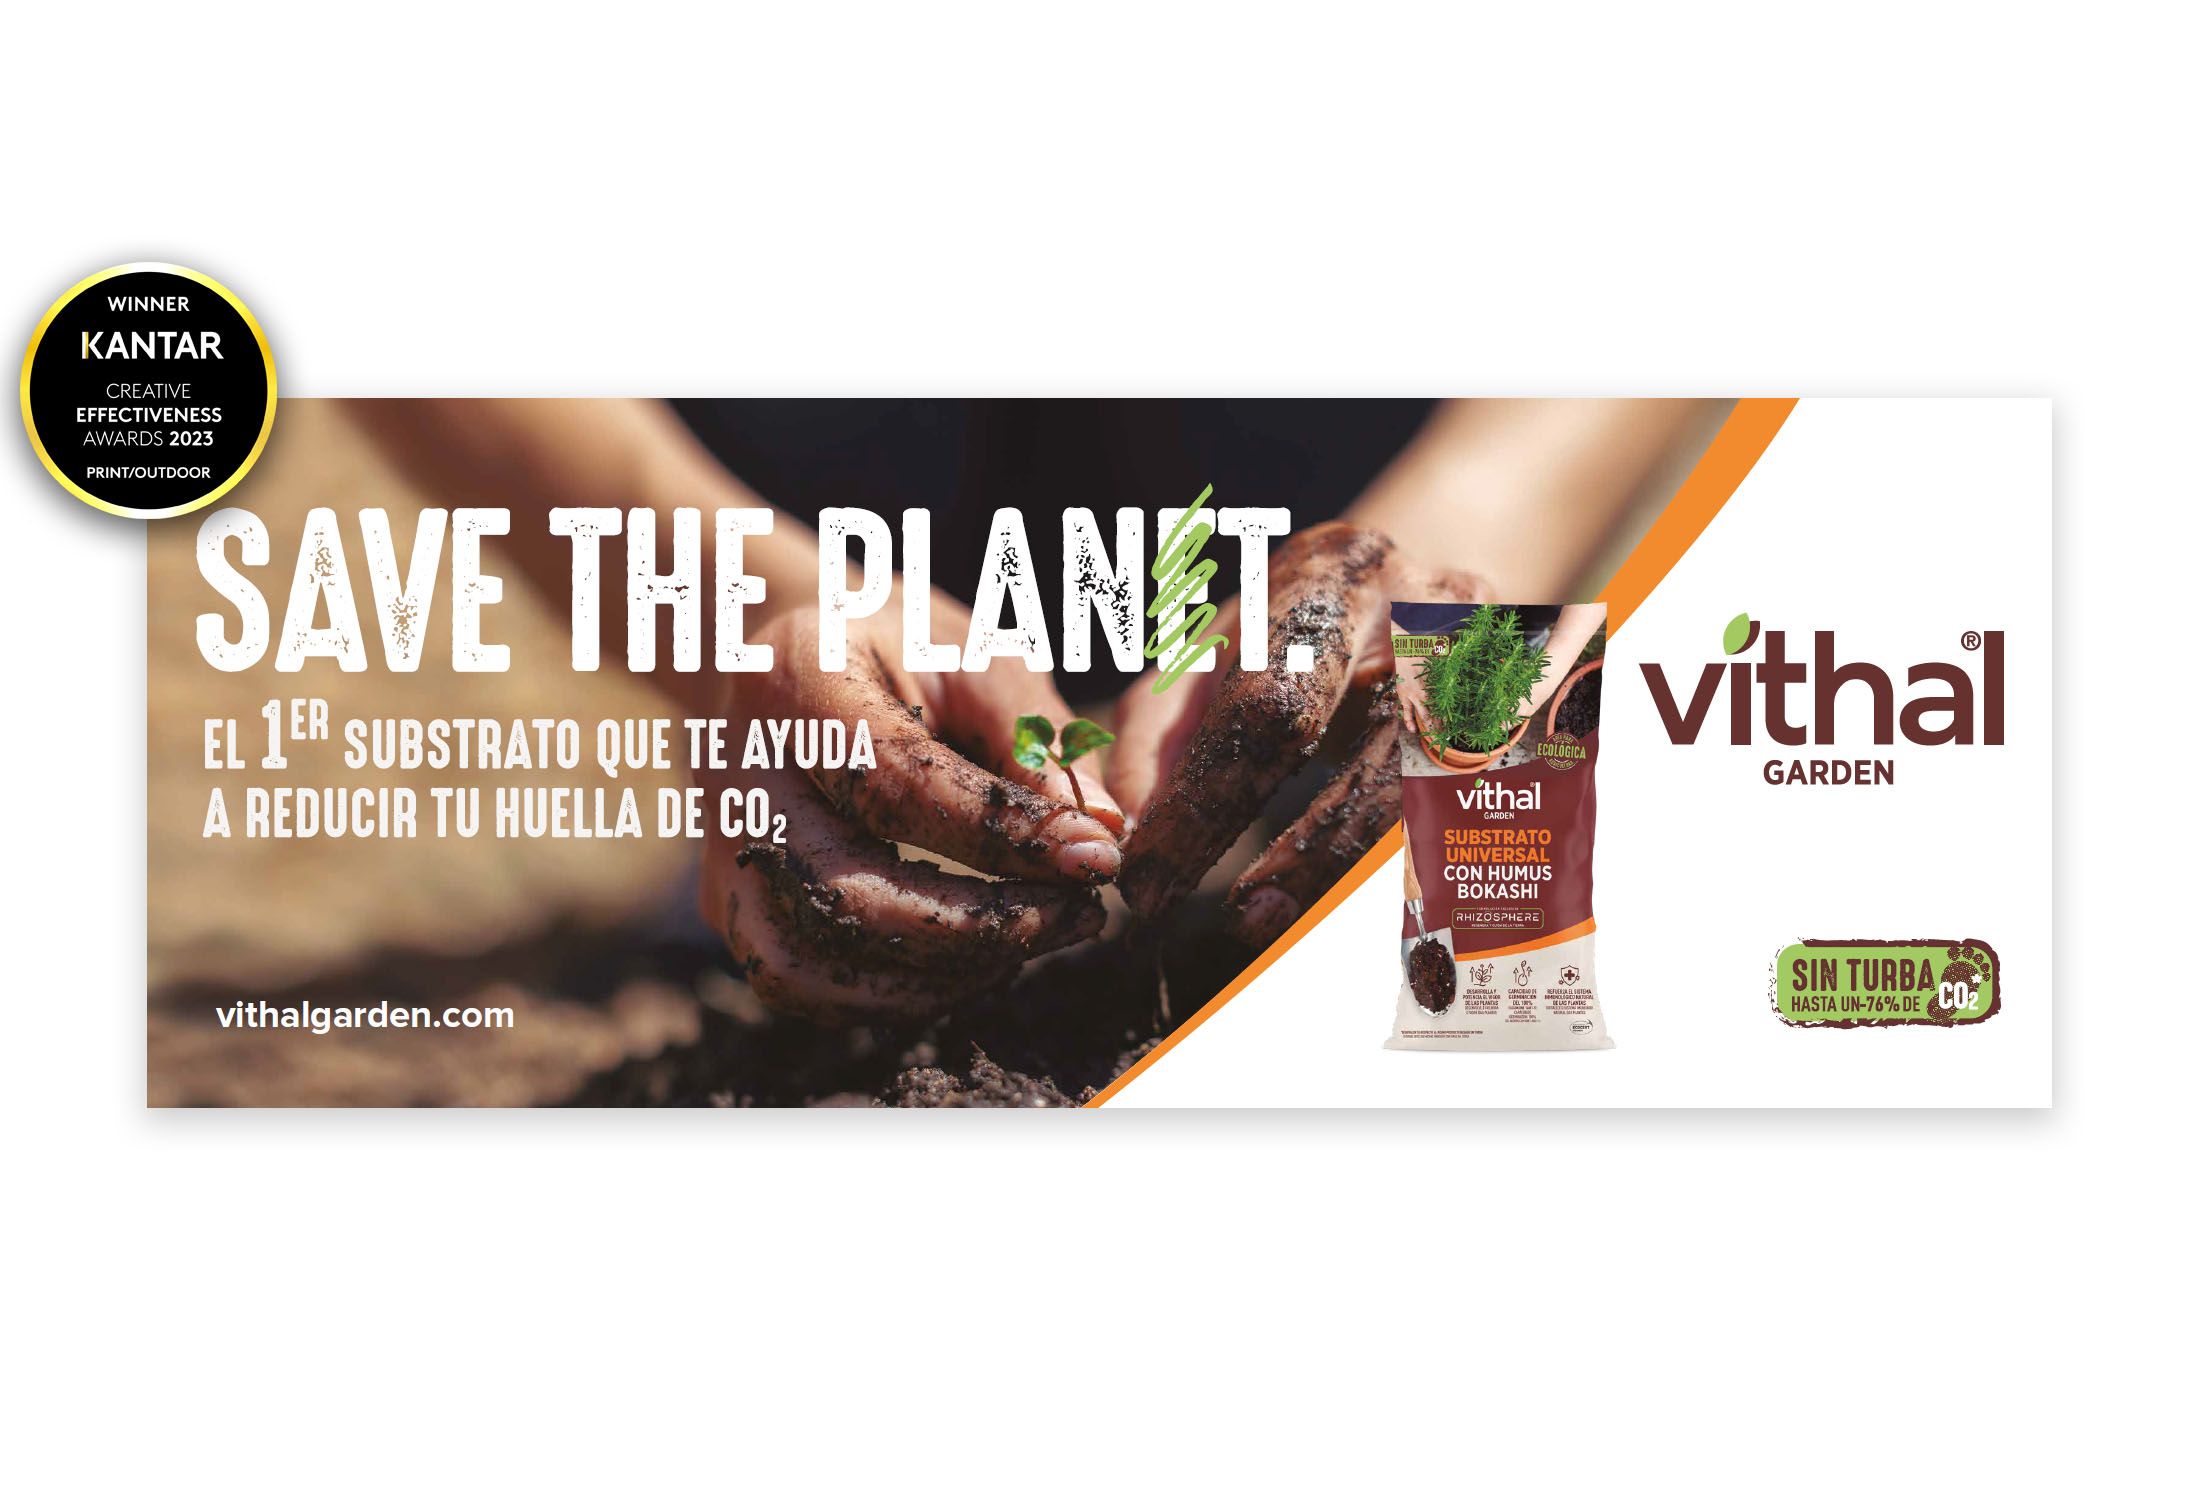 Kantar reconoce a  Vithal Garden y su campaña “Save the Planet / Save de Plant” con el premio Kantar Creative Efectiveness Awards por su alta calidad creativa y su efectividad